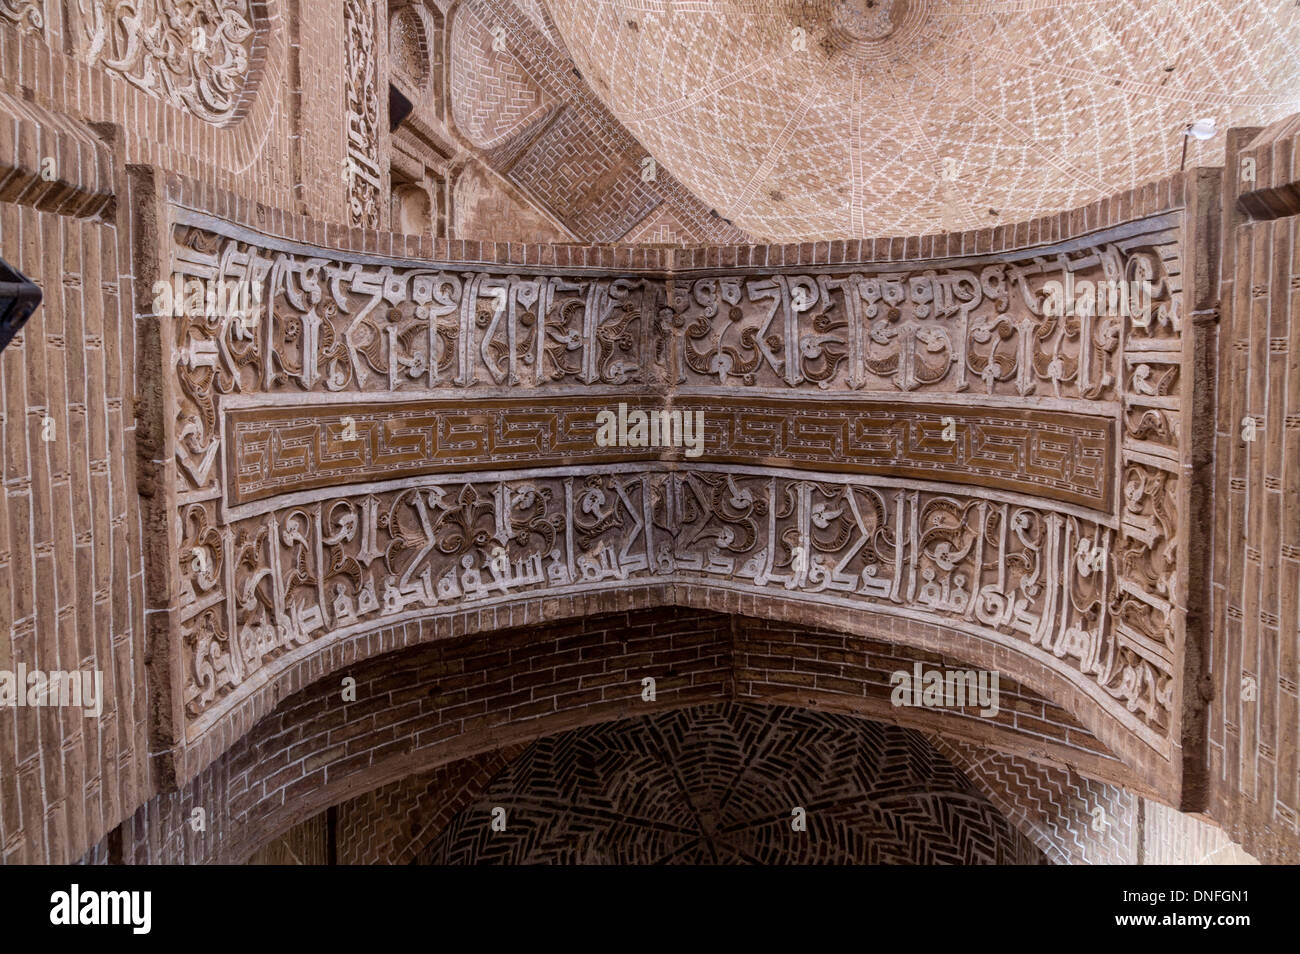 Arch menant à qibla dome chambre squinch mihrab capitale Saljuq architecture islamique iranien 12ème siècle, la mosquée de vendredi, l'Iran Ardistan Banque D'Images